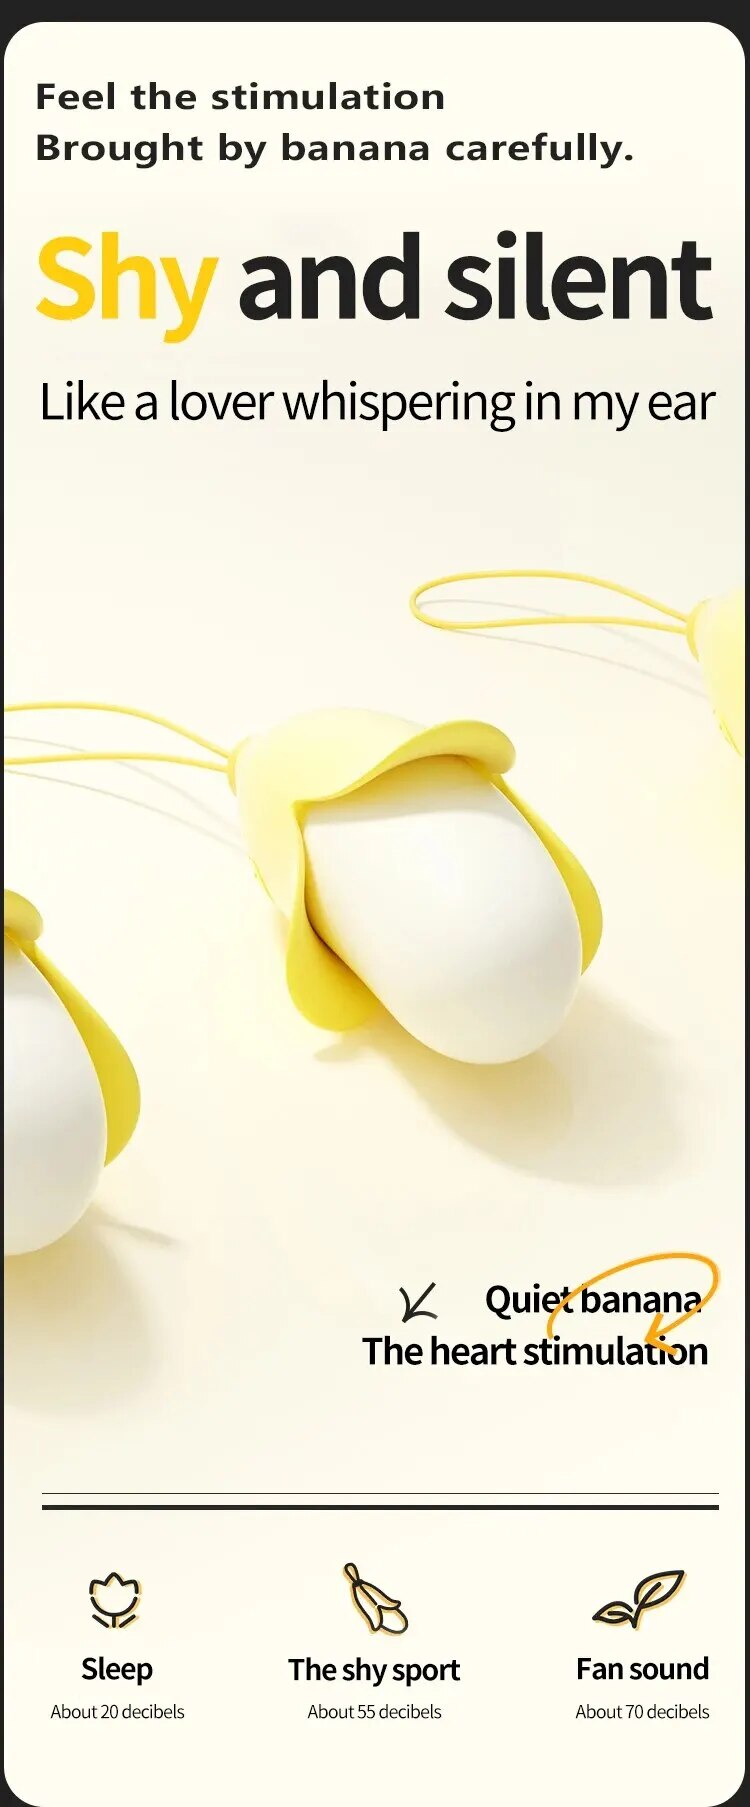 Giá sỉ Trứng rung mini nhỏ gọn hình quả chuối vàng silicon siêu mềm giá tốt